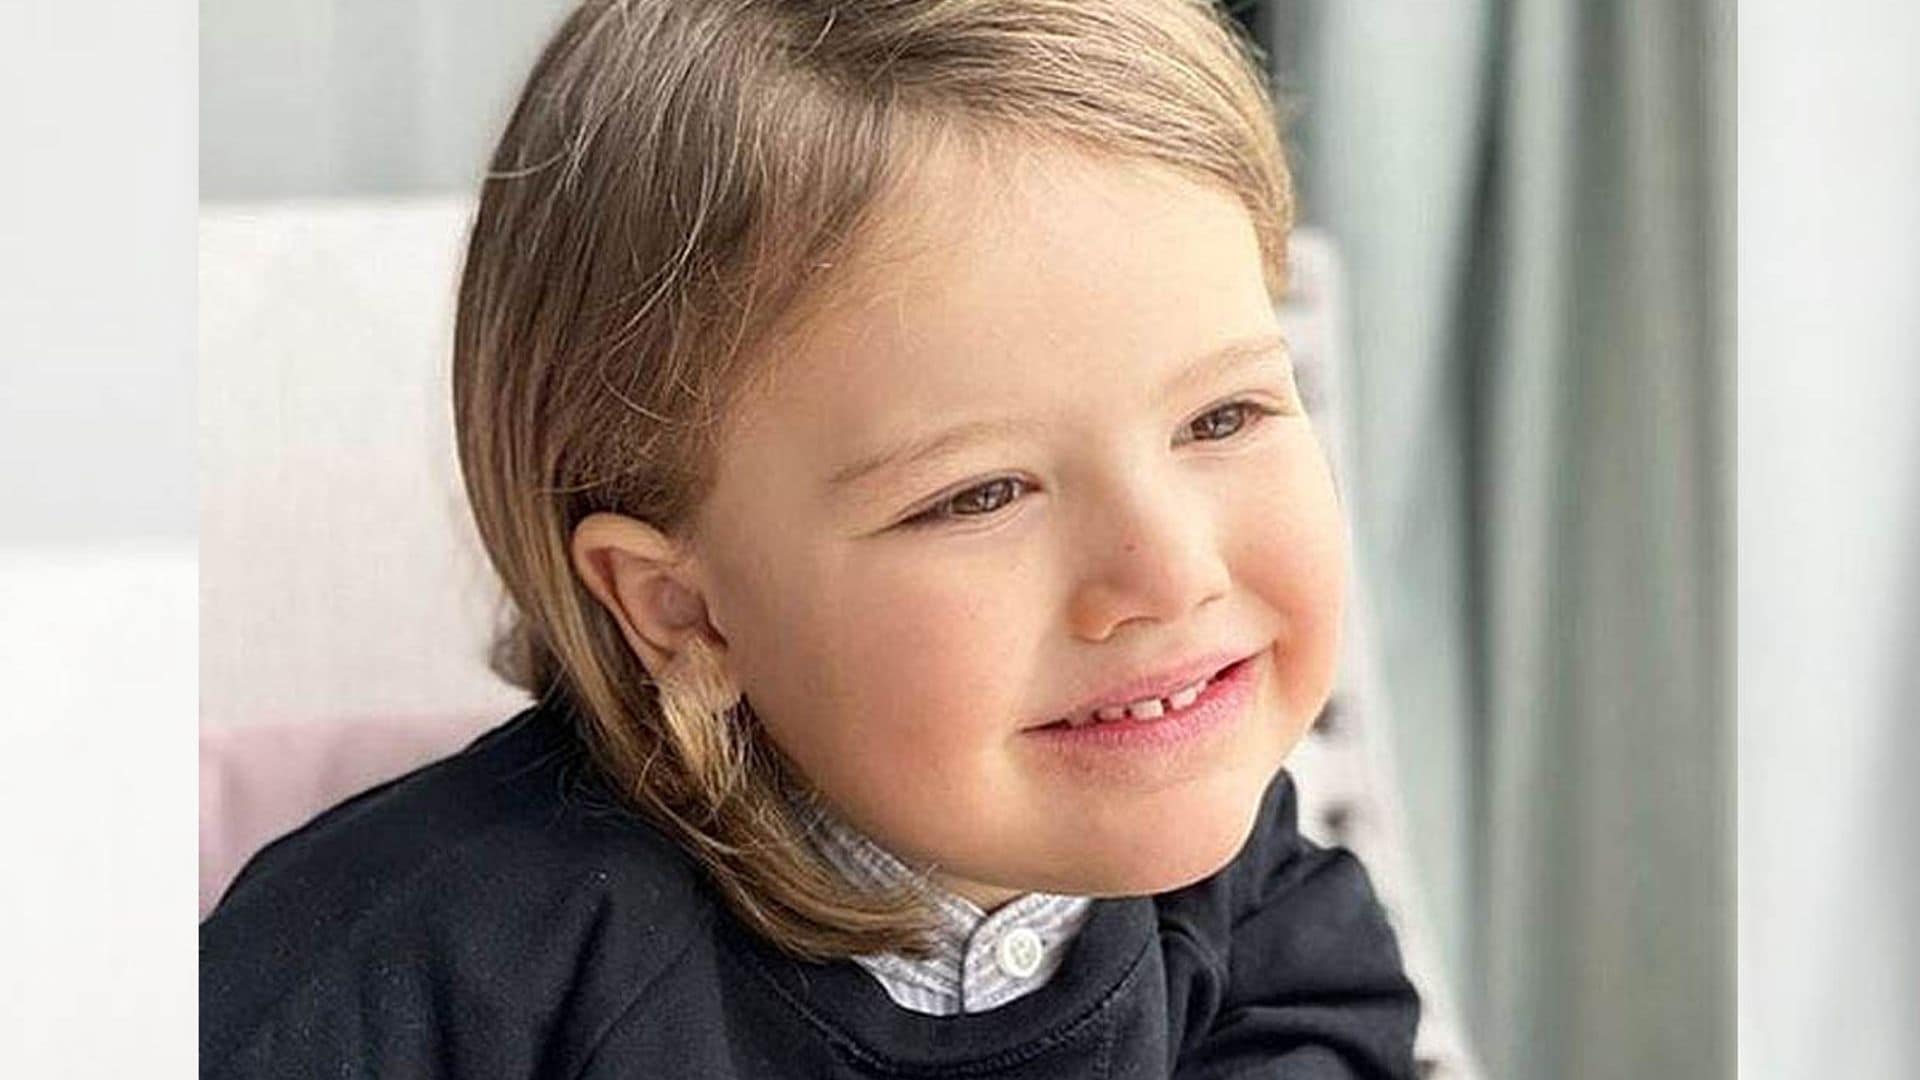 Alexander de Suecia cumple cuatro años con su familia volcada en la crisis sanitaria